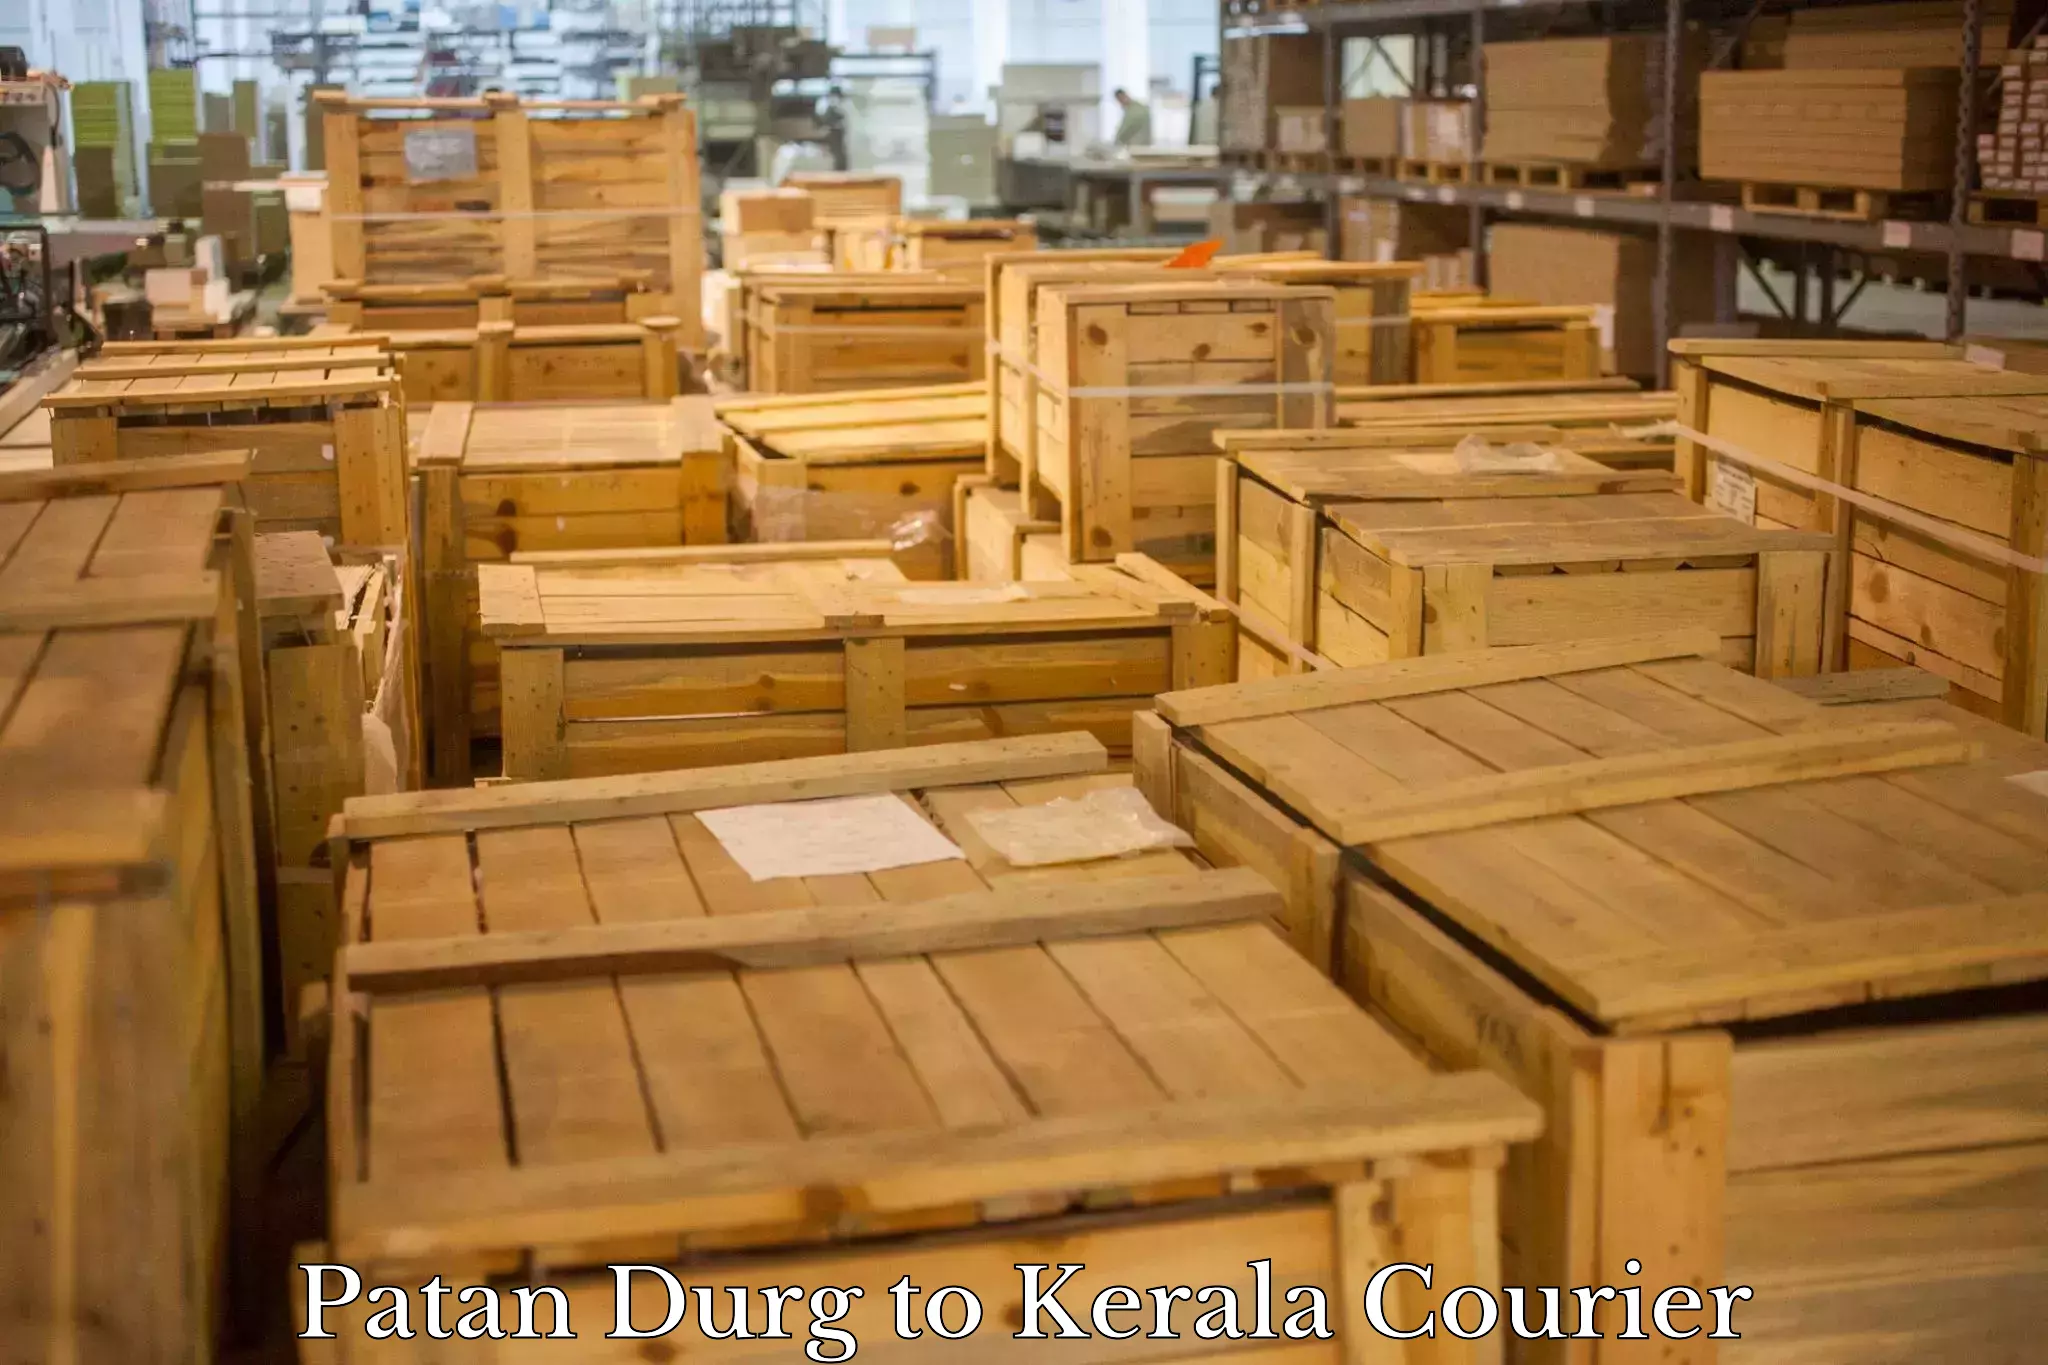 Door-to-door freight service Patan Durg to Kerala